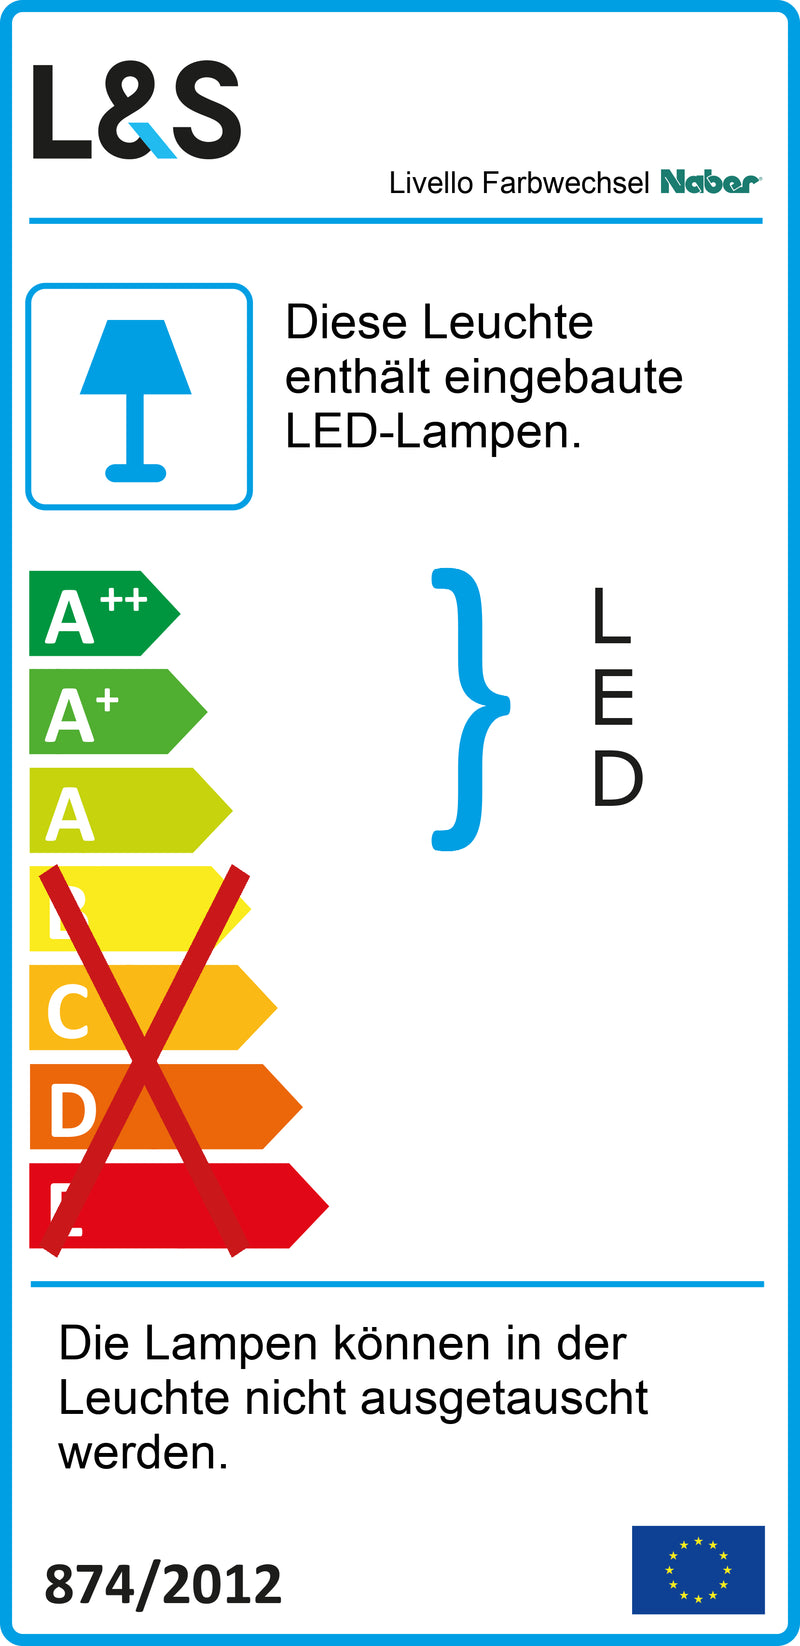 E-Label zu Zeichnung zu Livello Farbwechsel LED als Variante Set-5, alufarbig von Naber GmbH in der Kategorie Lichttechnik in Österreich auf conceptshop.at